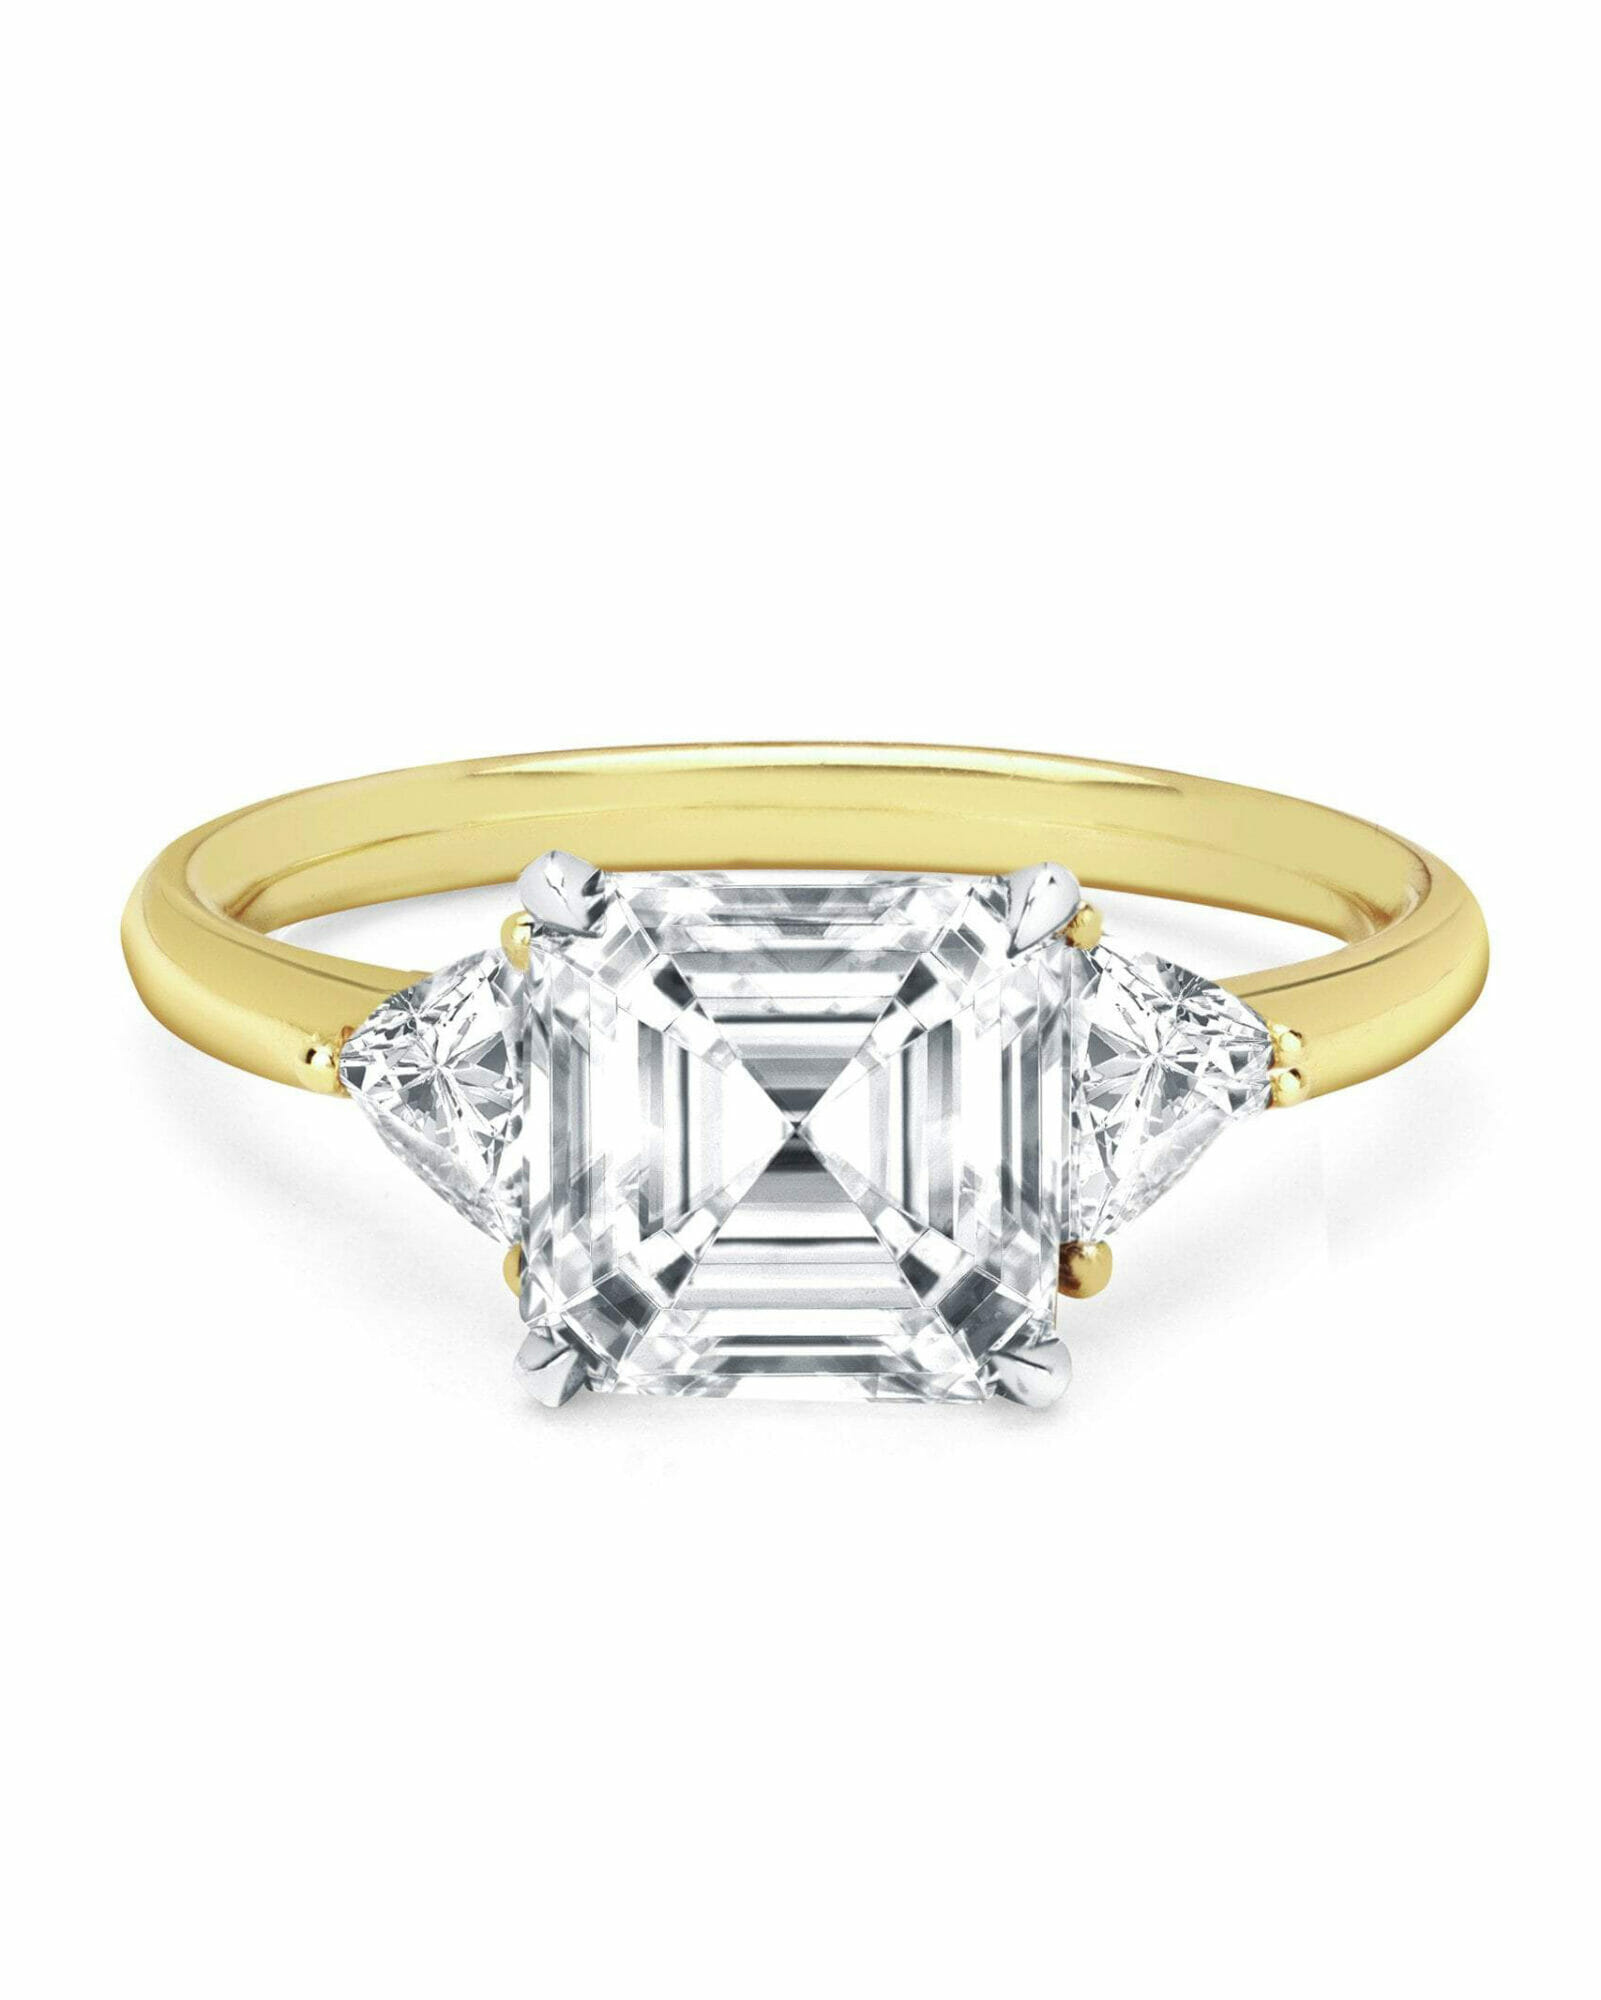 asscher cut diamond engagement ring wedding inspiration